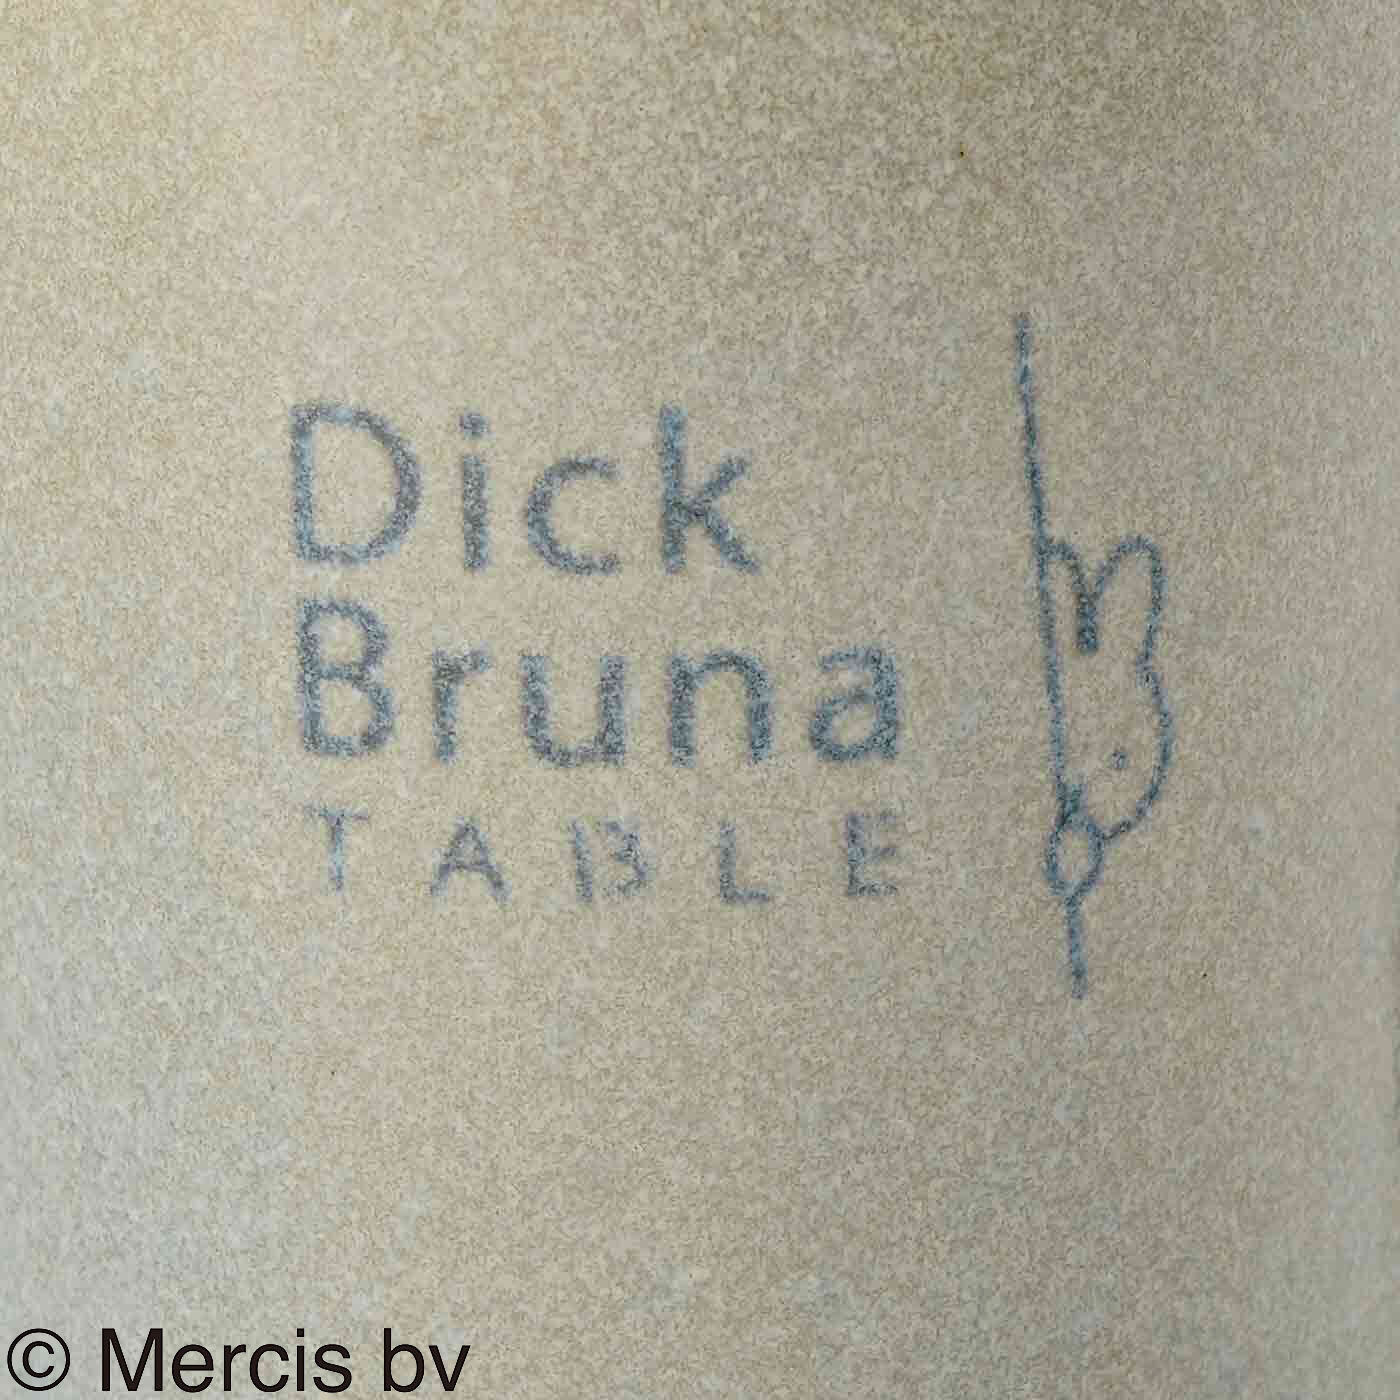 ディック・ブルーナ テーブル|Dick Bruna TABLE  テーブルを華やかに彩るマグカップ|特徴ある釉薬を使っています